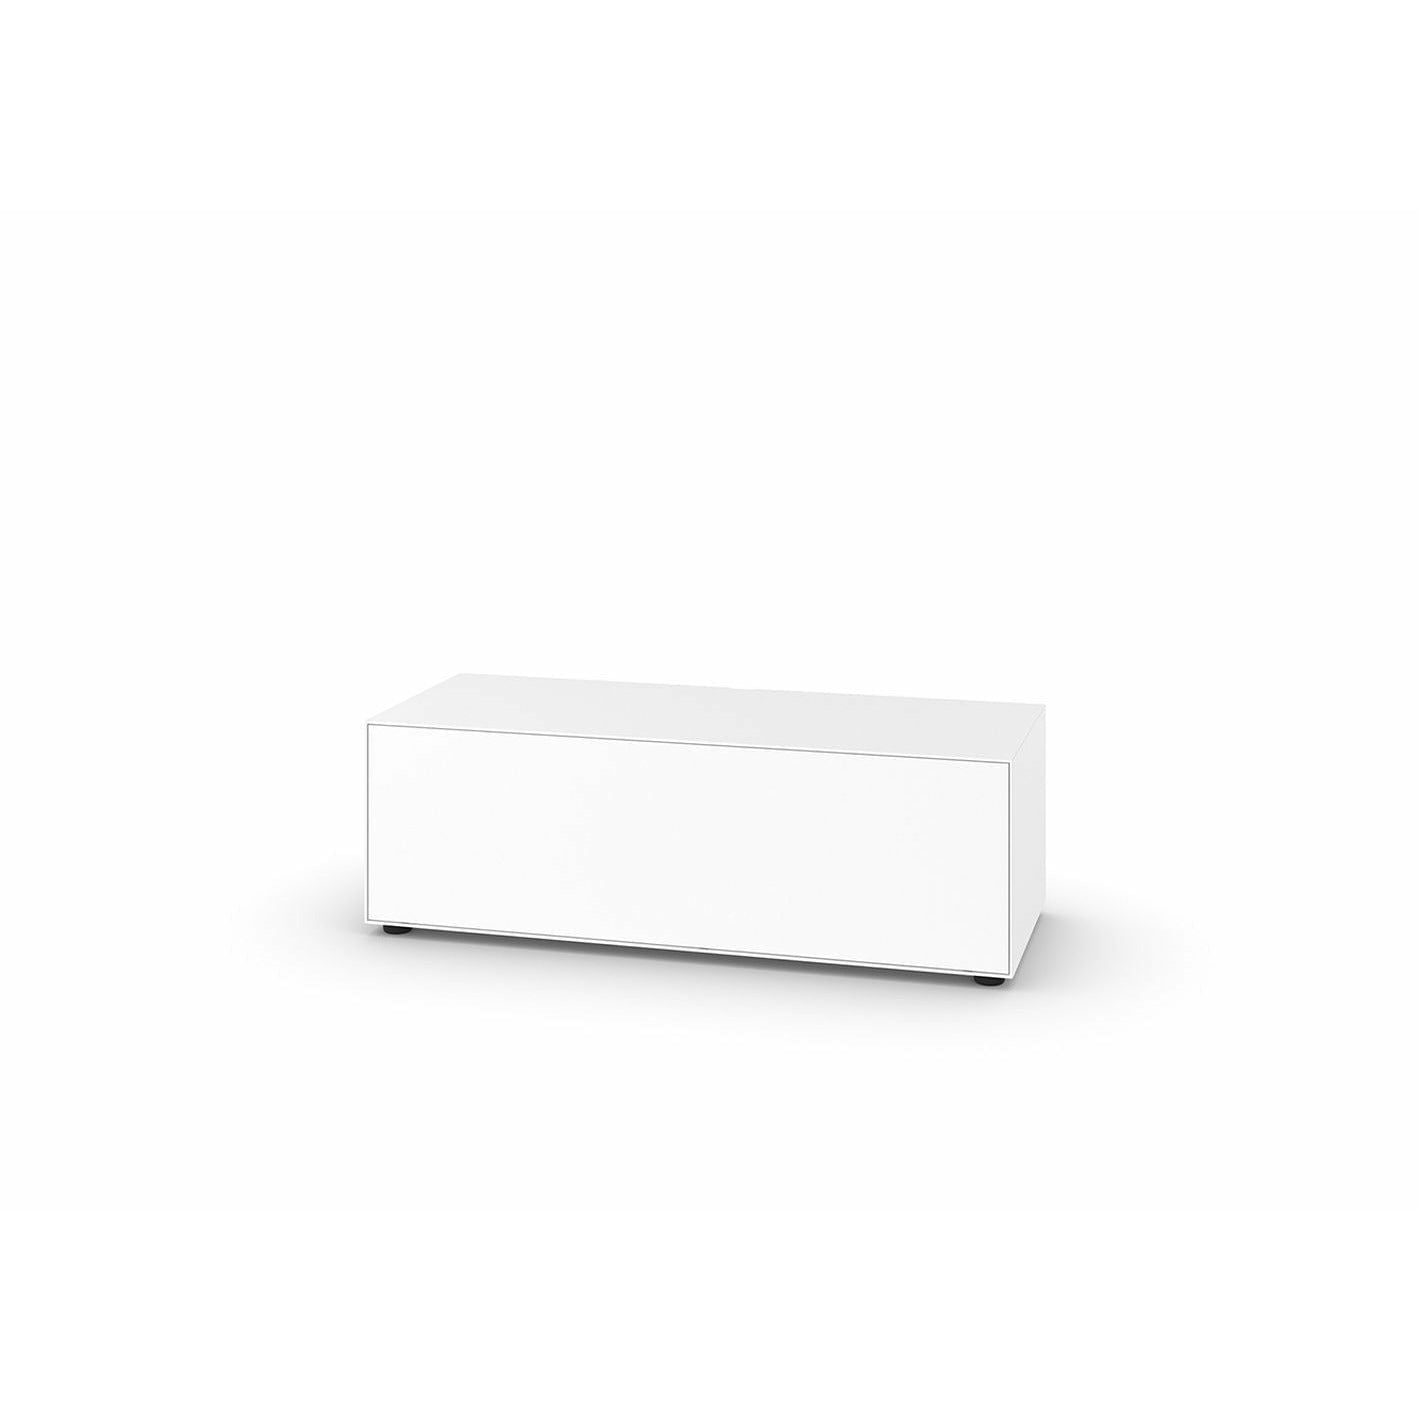 Piure Nex Pur Box Media Flap Hx W 37,5x120 Cm, 1 Shelf